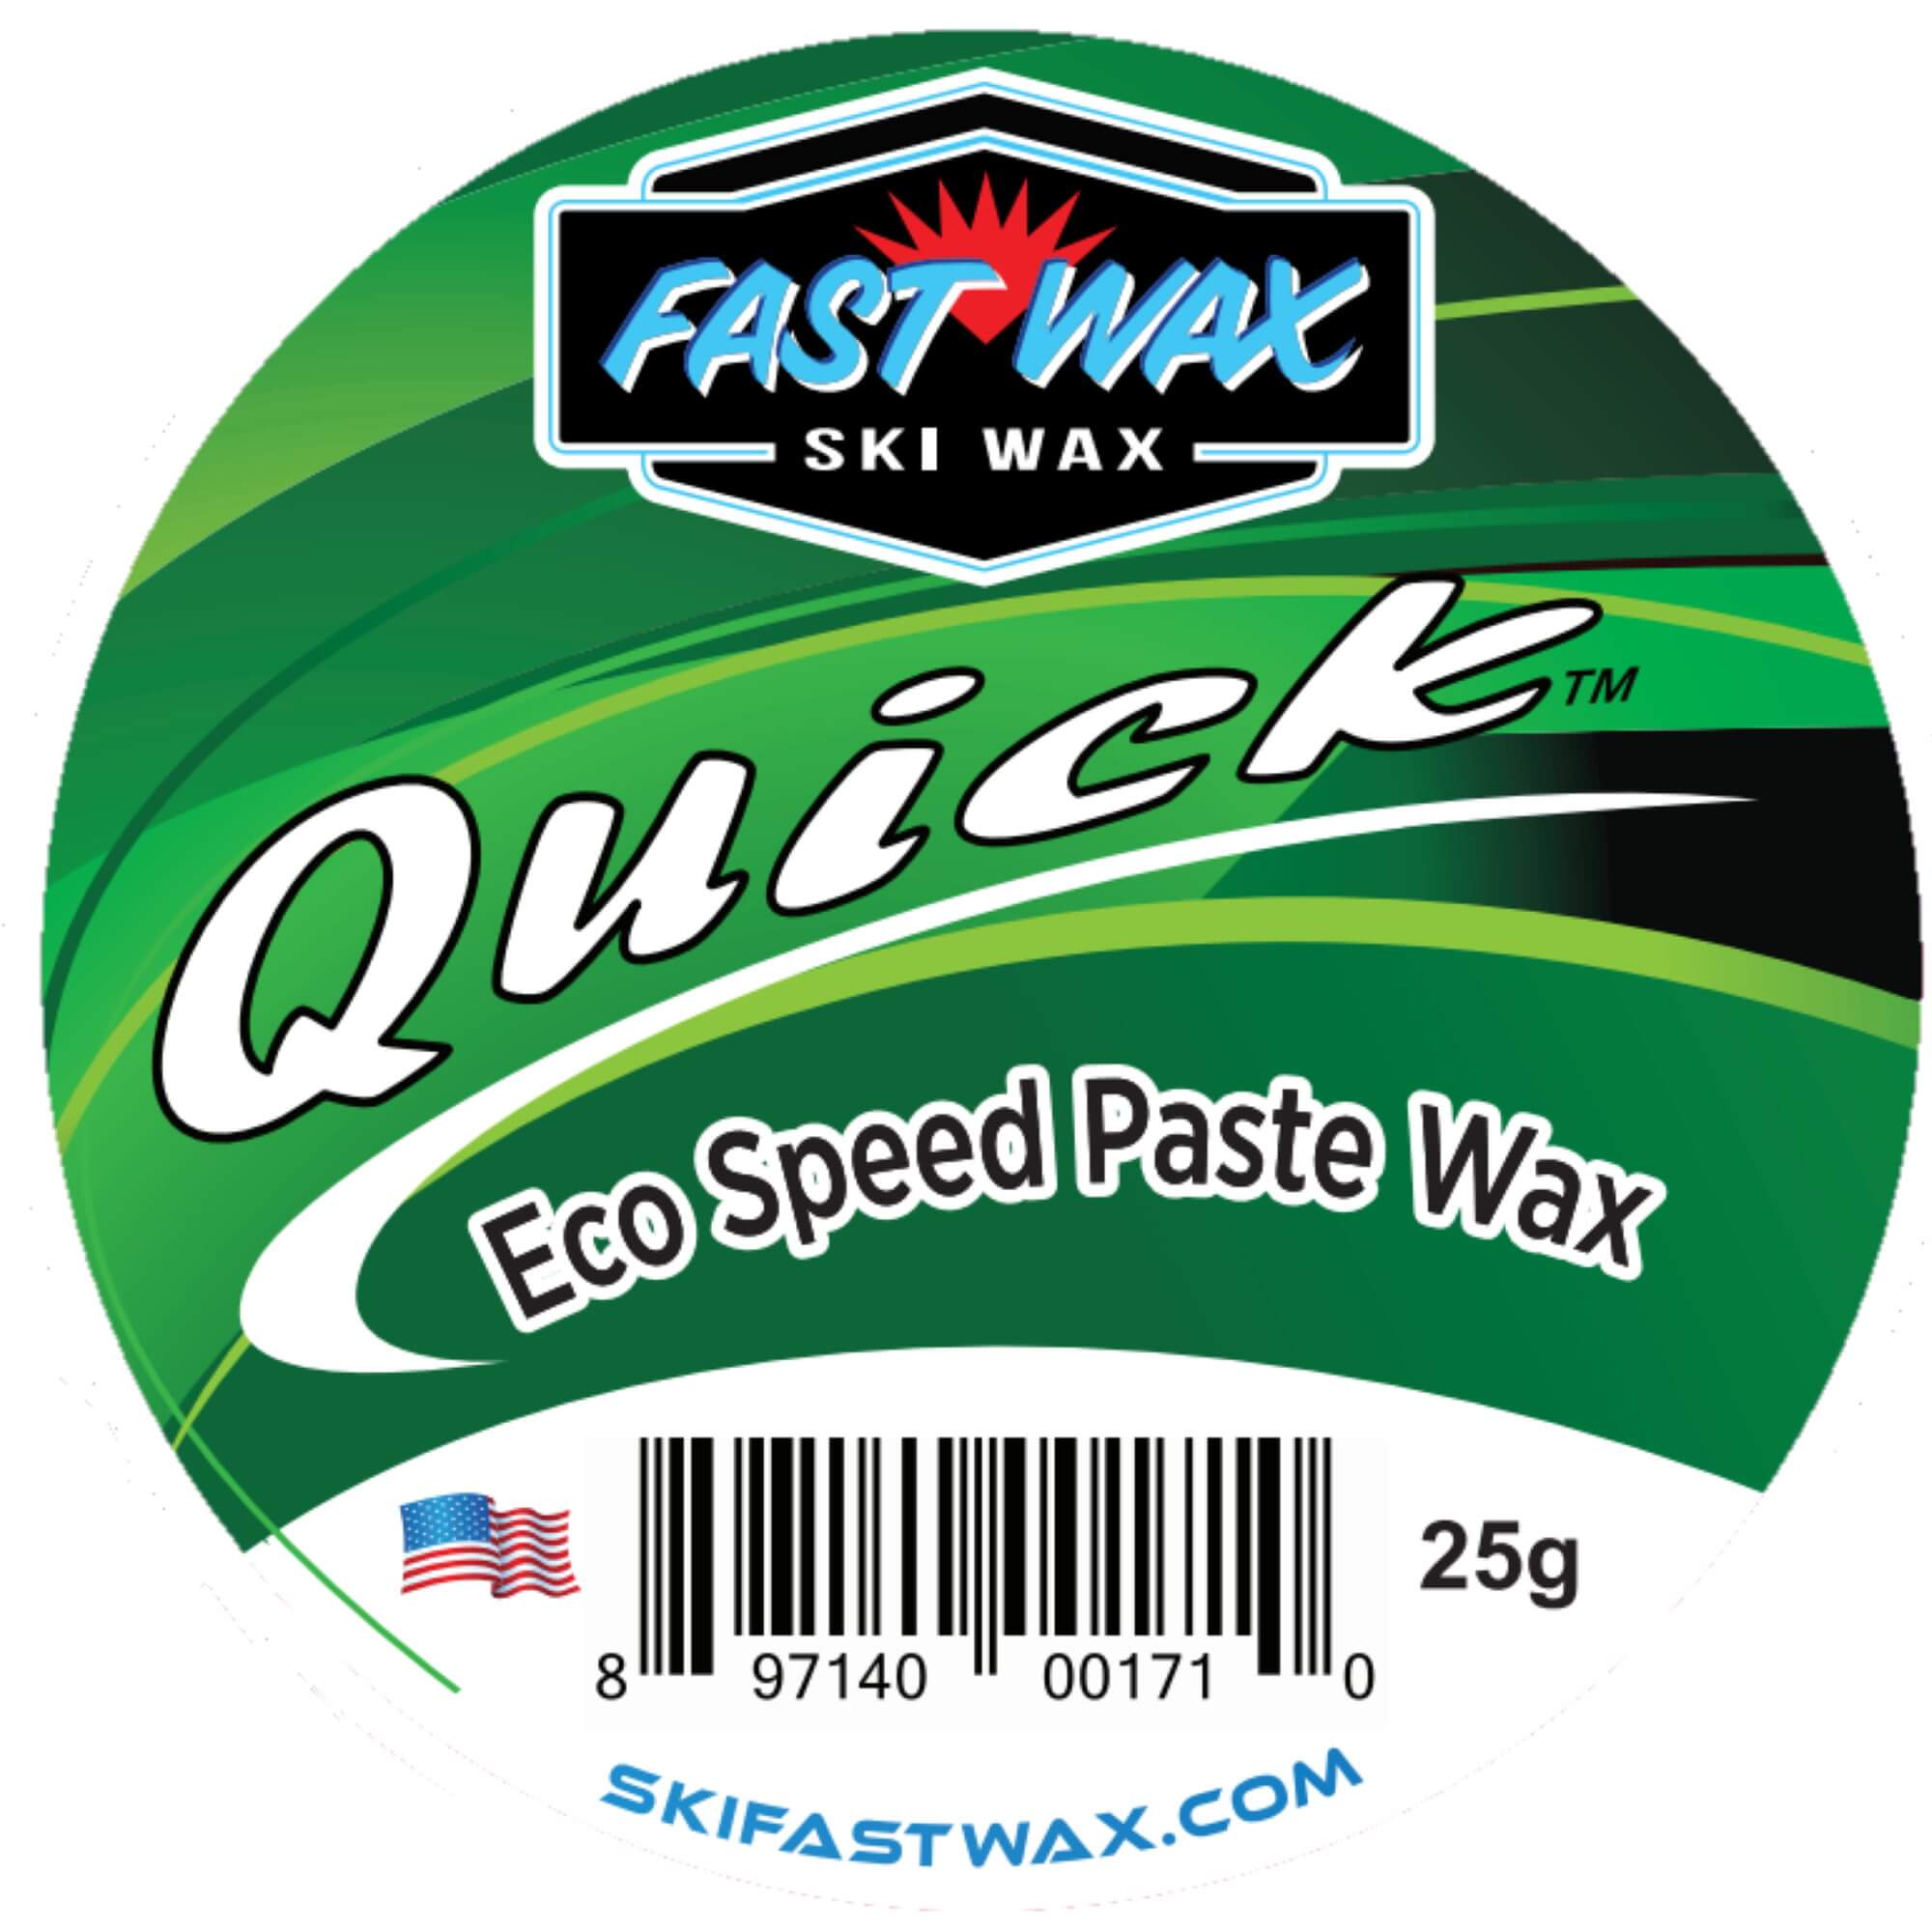 Fast Wax Eco Friendly Quick Wax